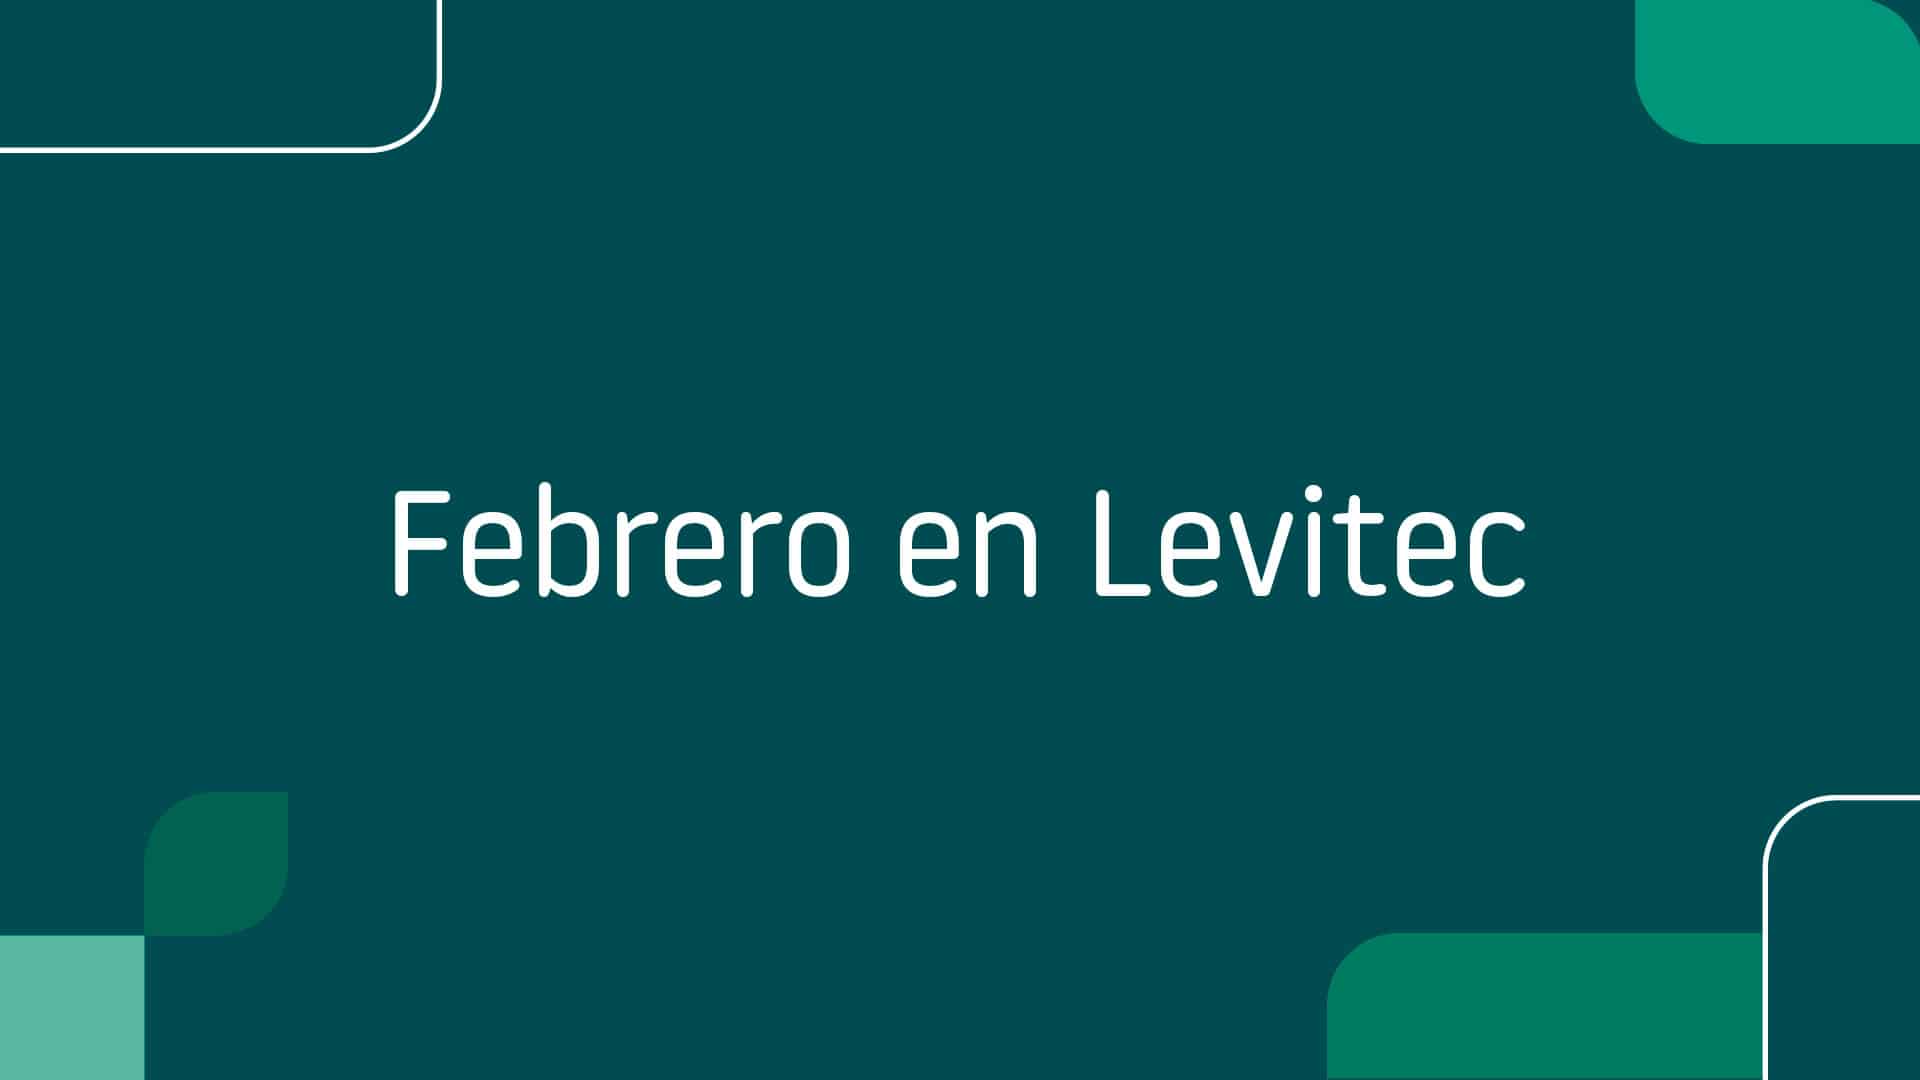 Febrero en Levitec